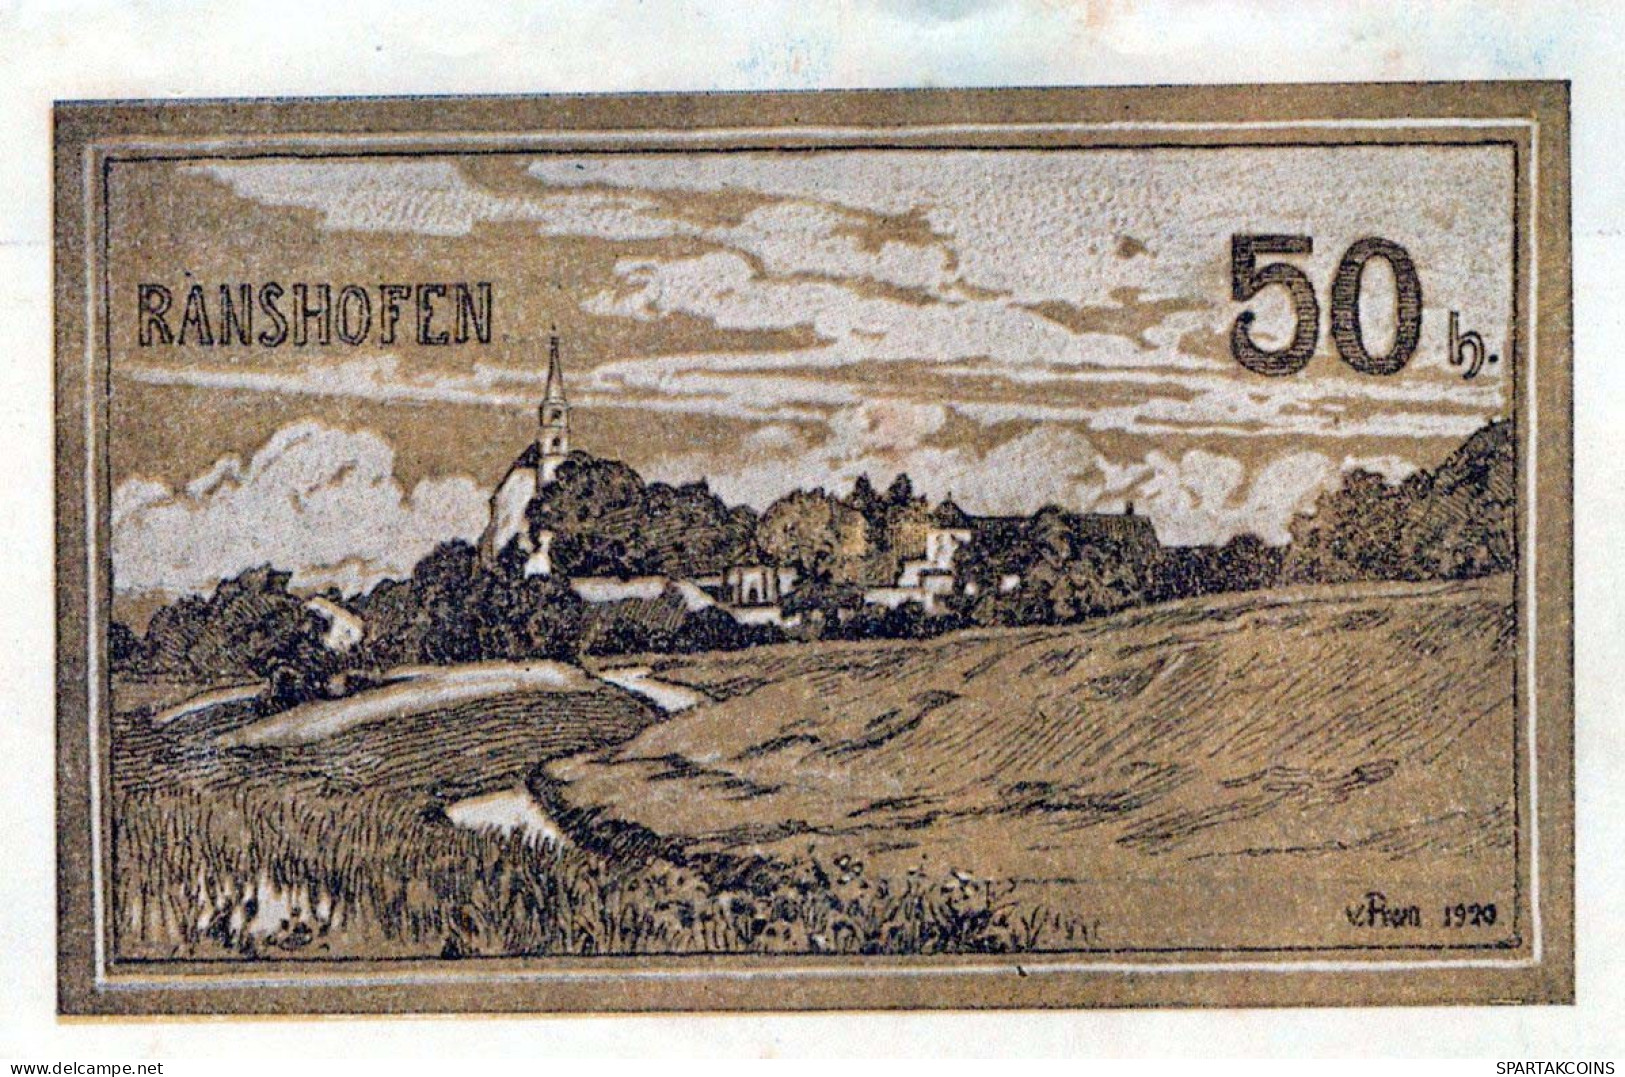 50 HELLER 1920 Stadt RANSHOFEN Oberösterreich Österreich Notgeld Banknote #PE523 - [11] Emisiones Locales